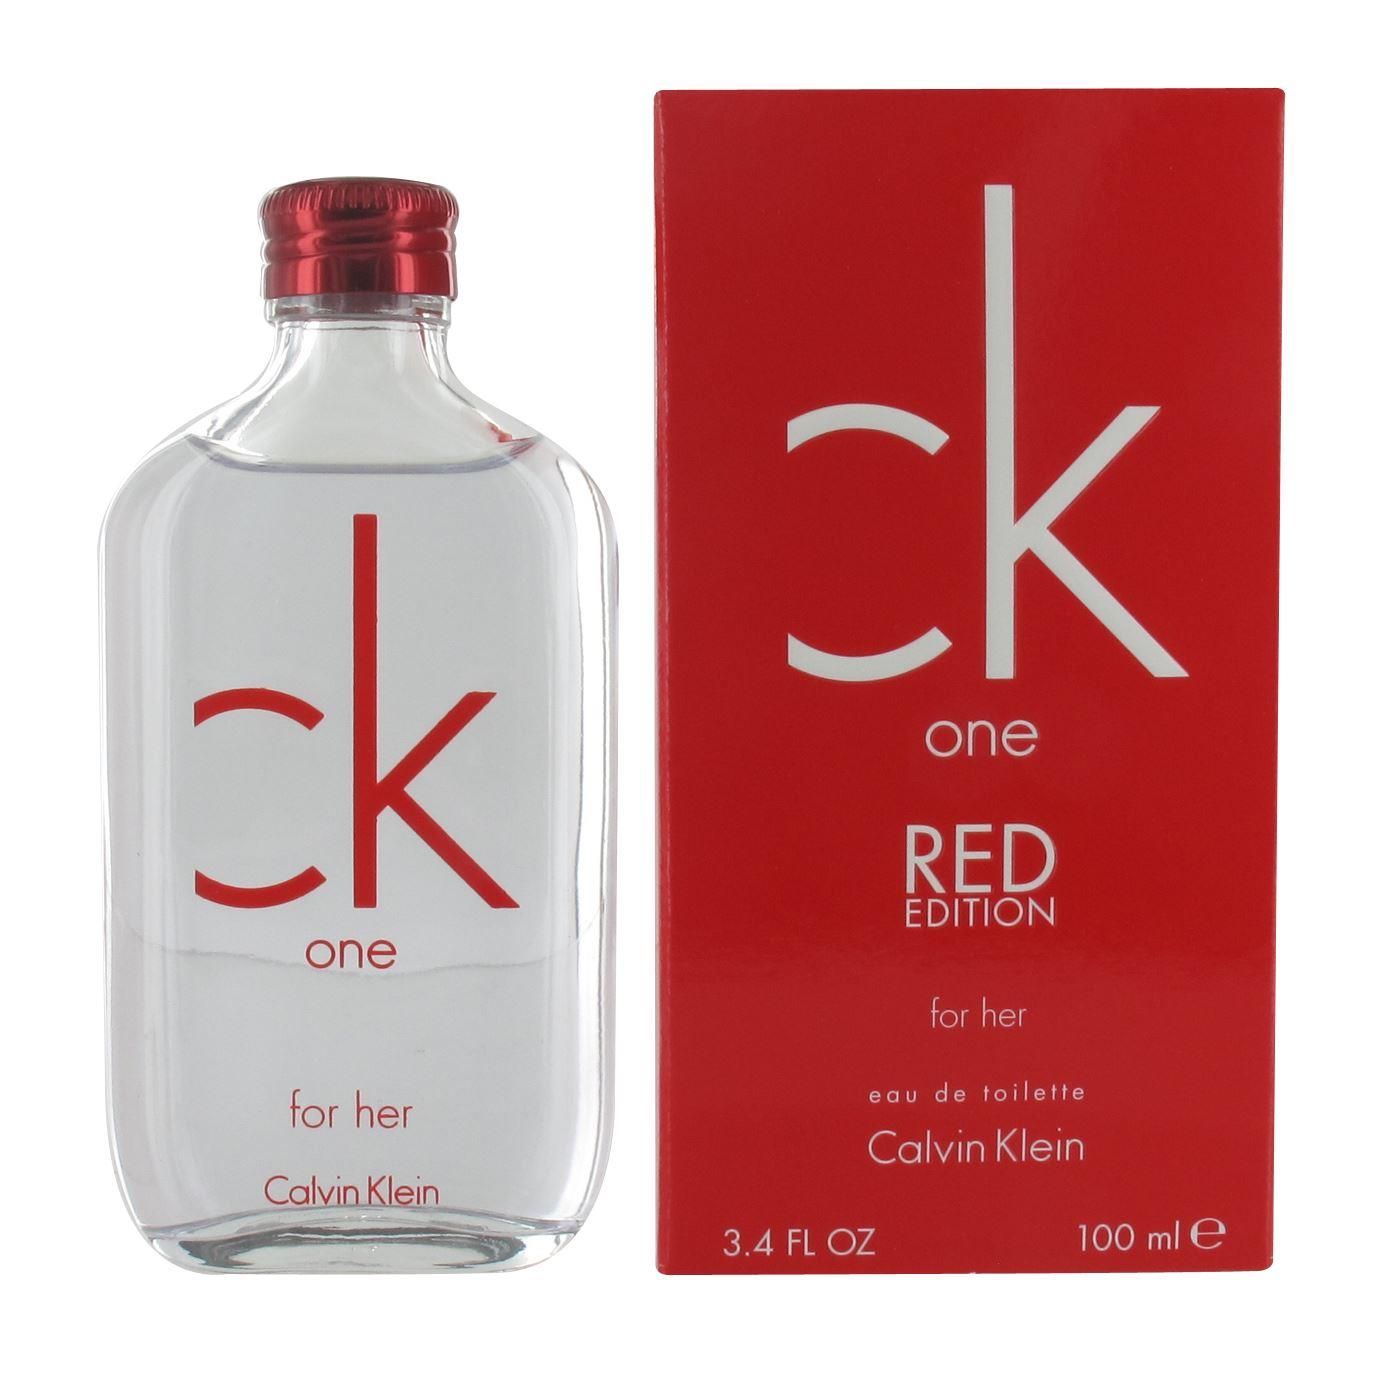 Ck One Red 100ml - Thế giới nước hoa cao cấp dành riêng cho bạn